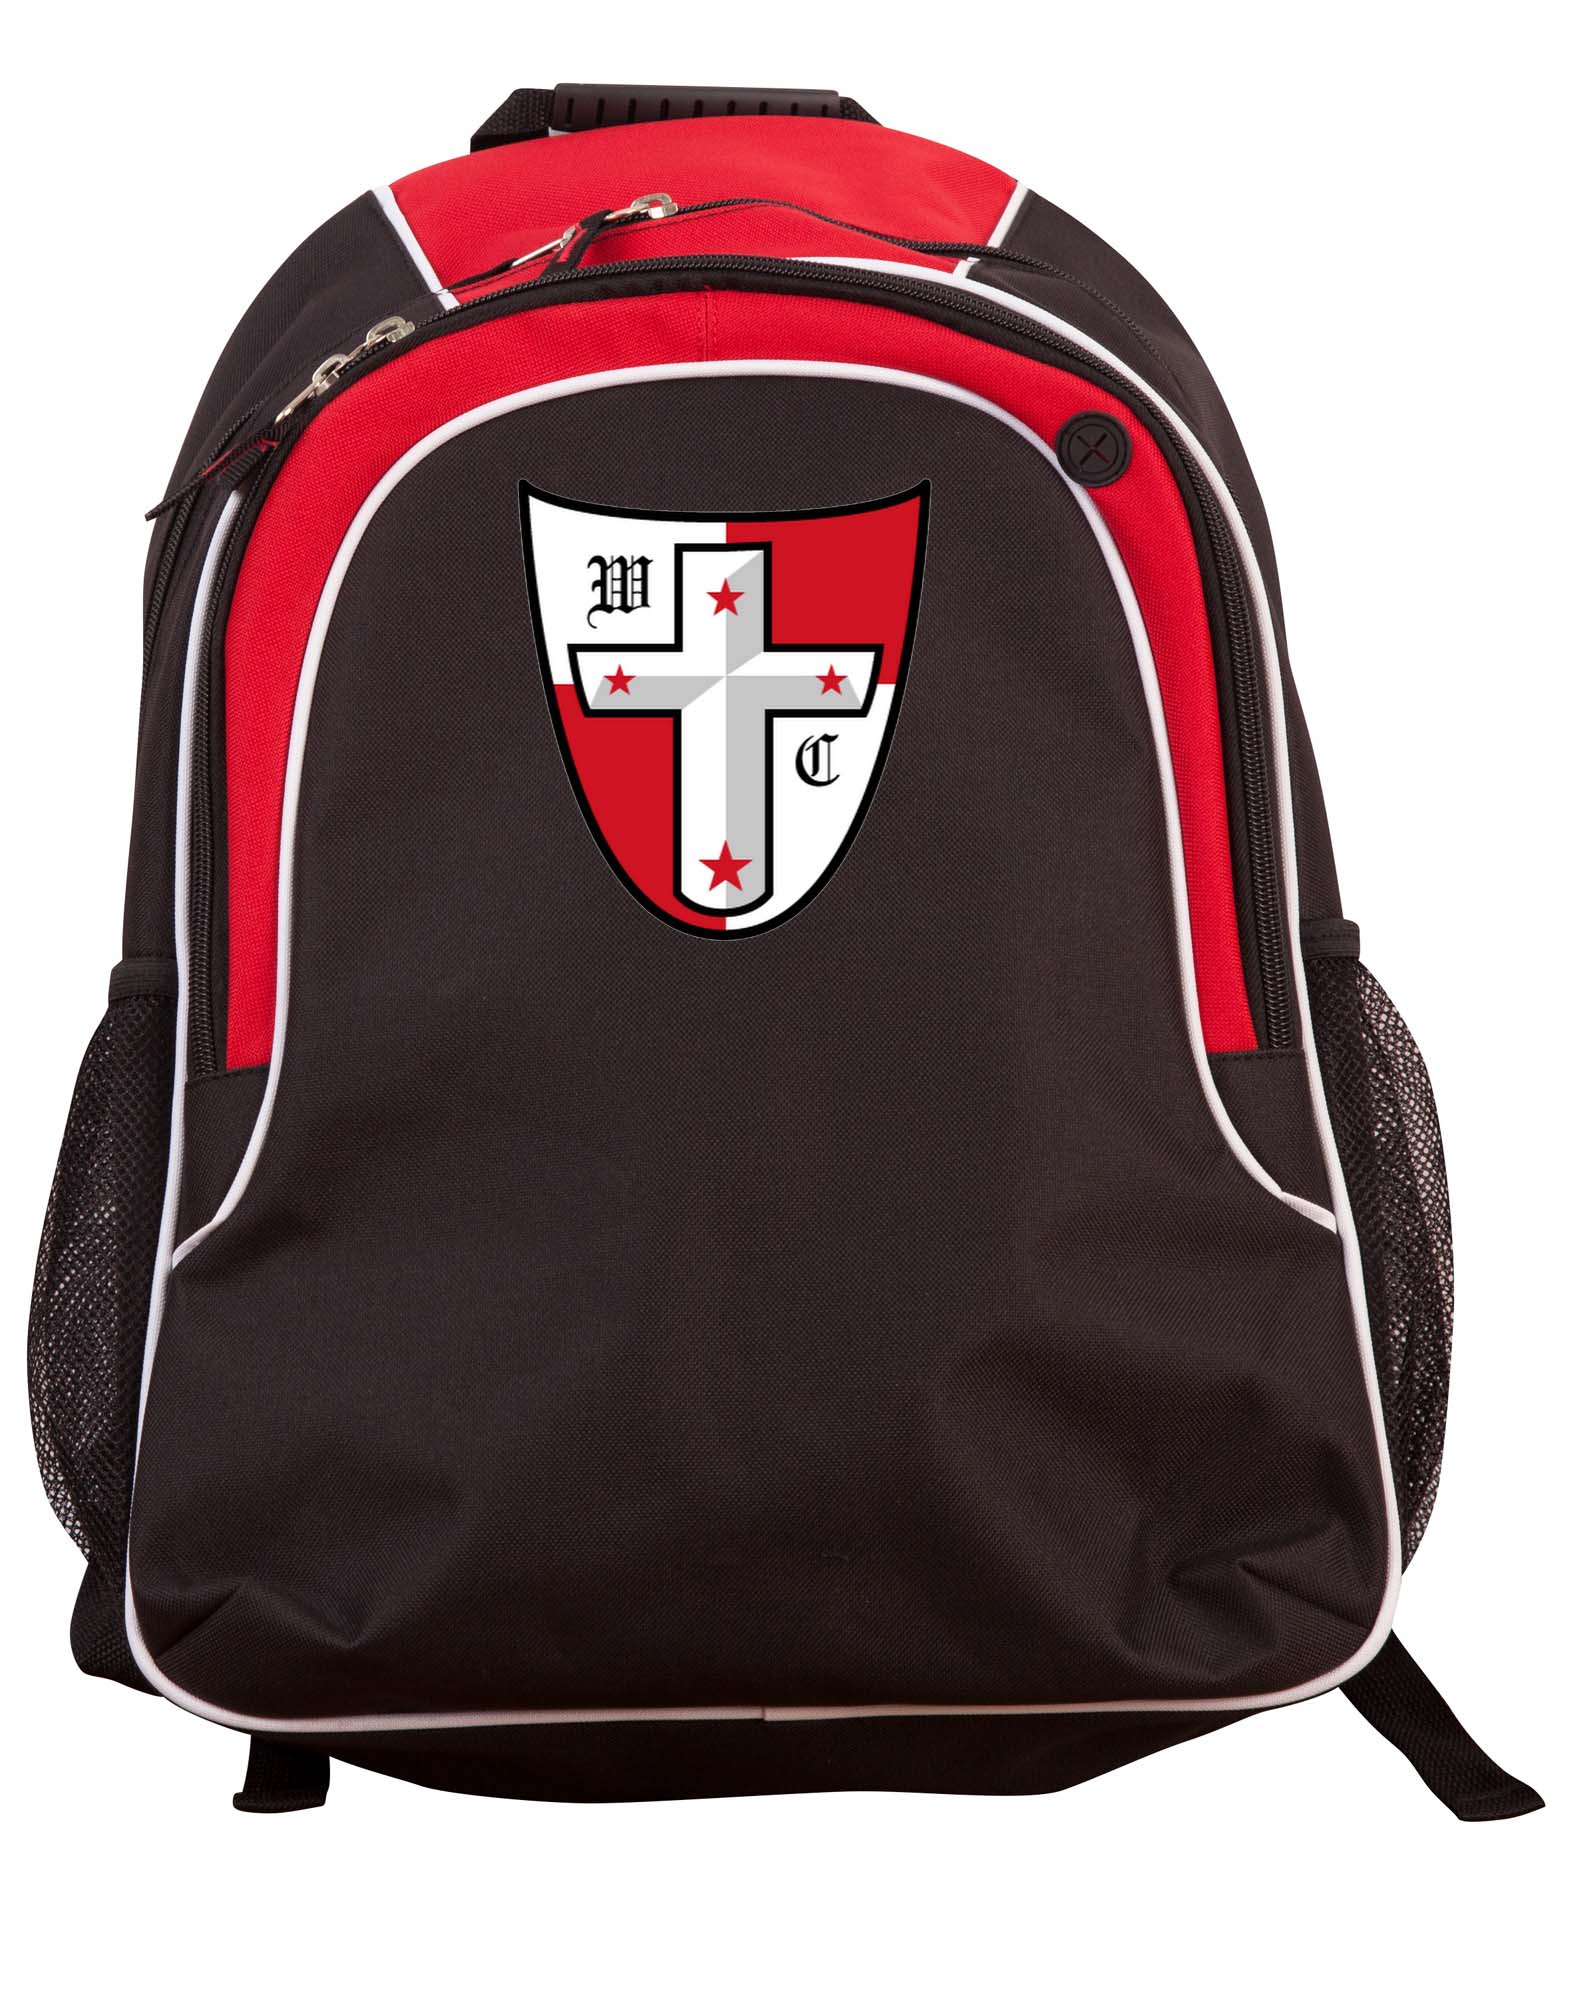 Crusaders Backpack